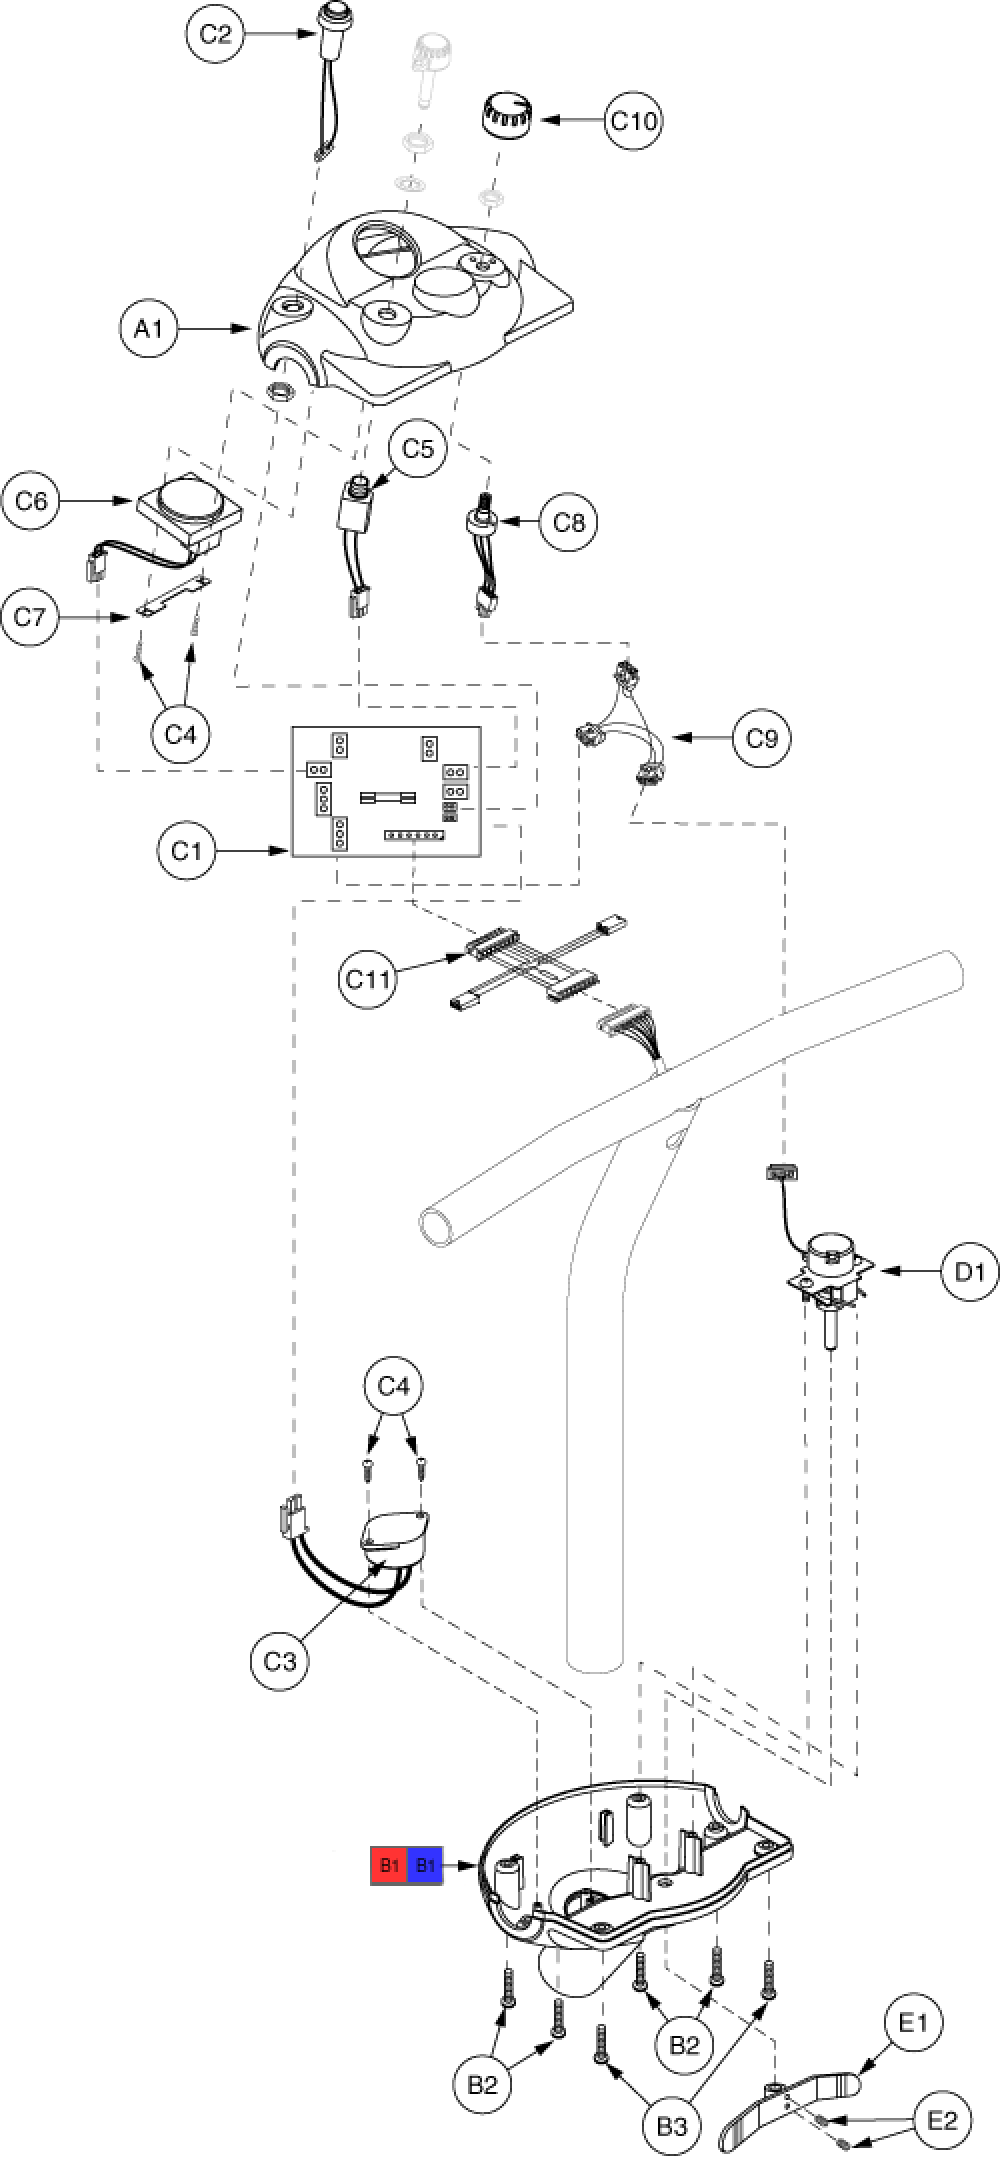 Electronics Assembly - Console (dash Au) parts diagram